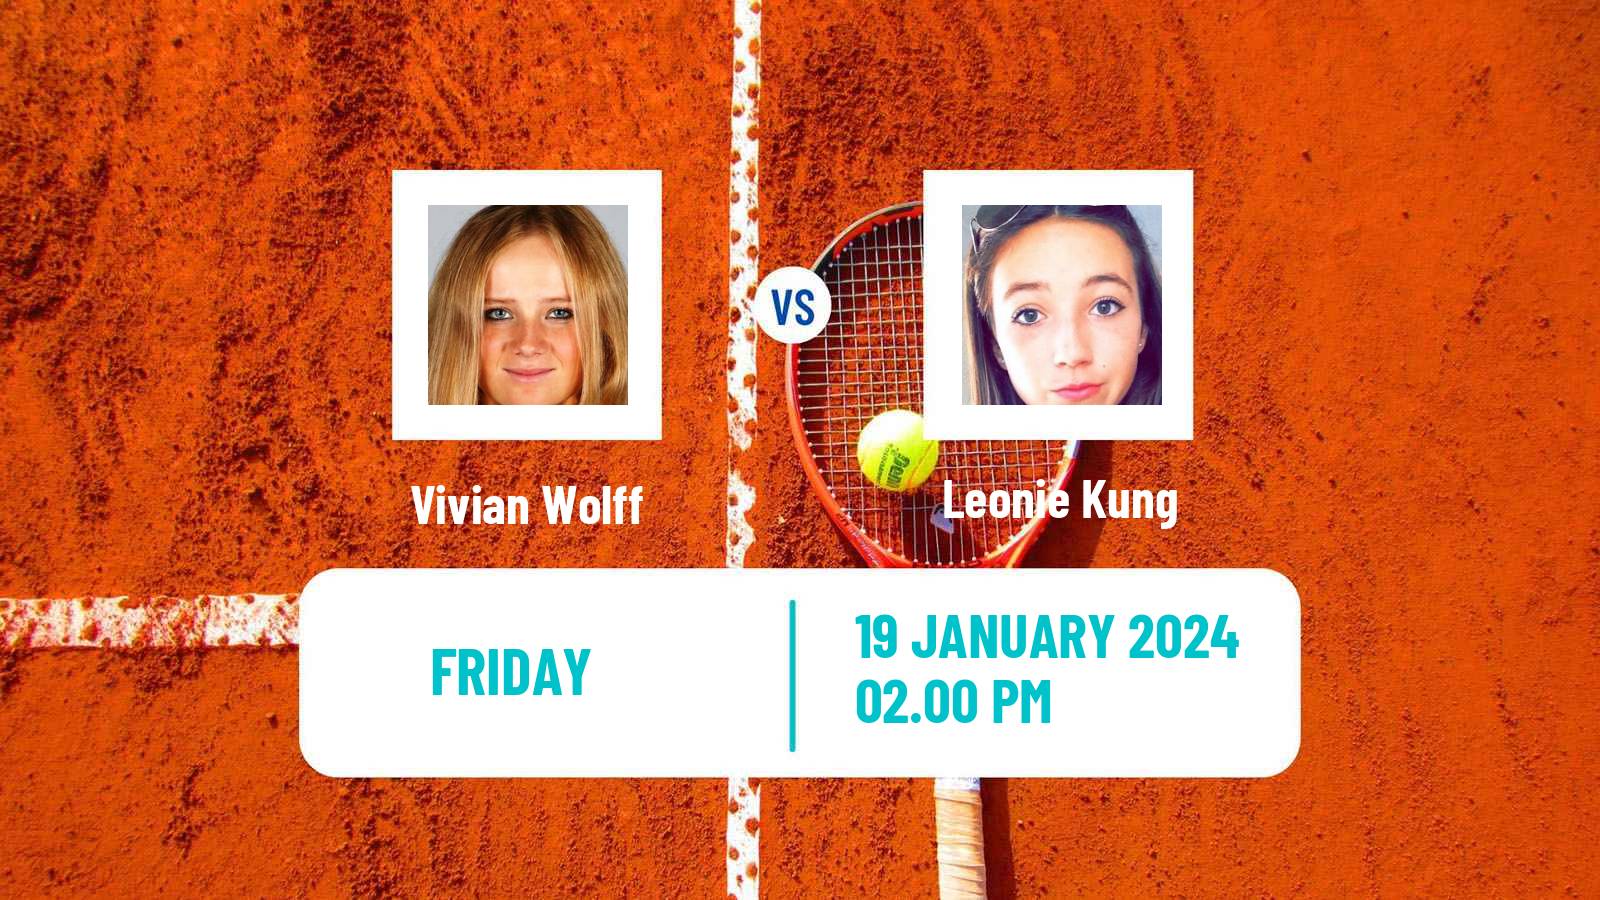 Tennis ITF W35 Naples Fl 2 Women Vivian Wolff - Leonie Kung